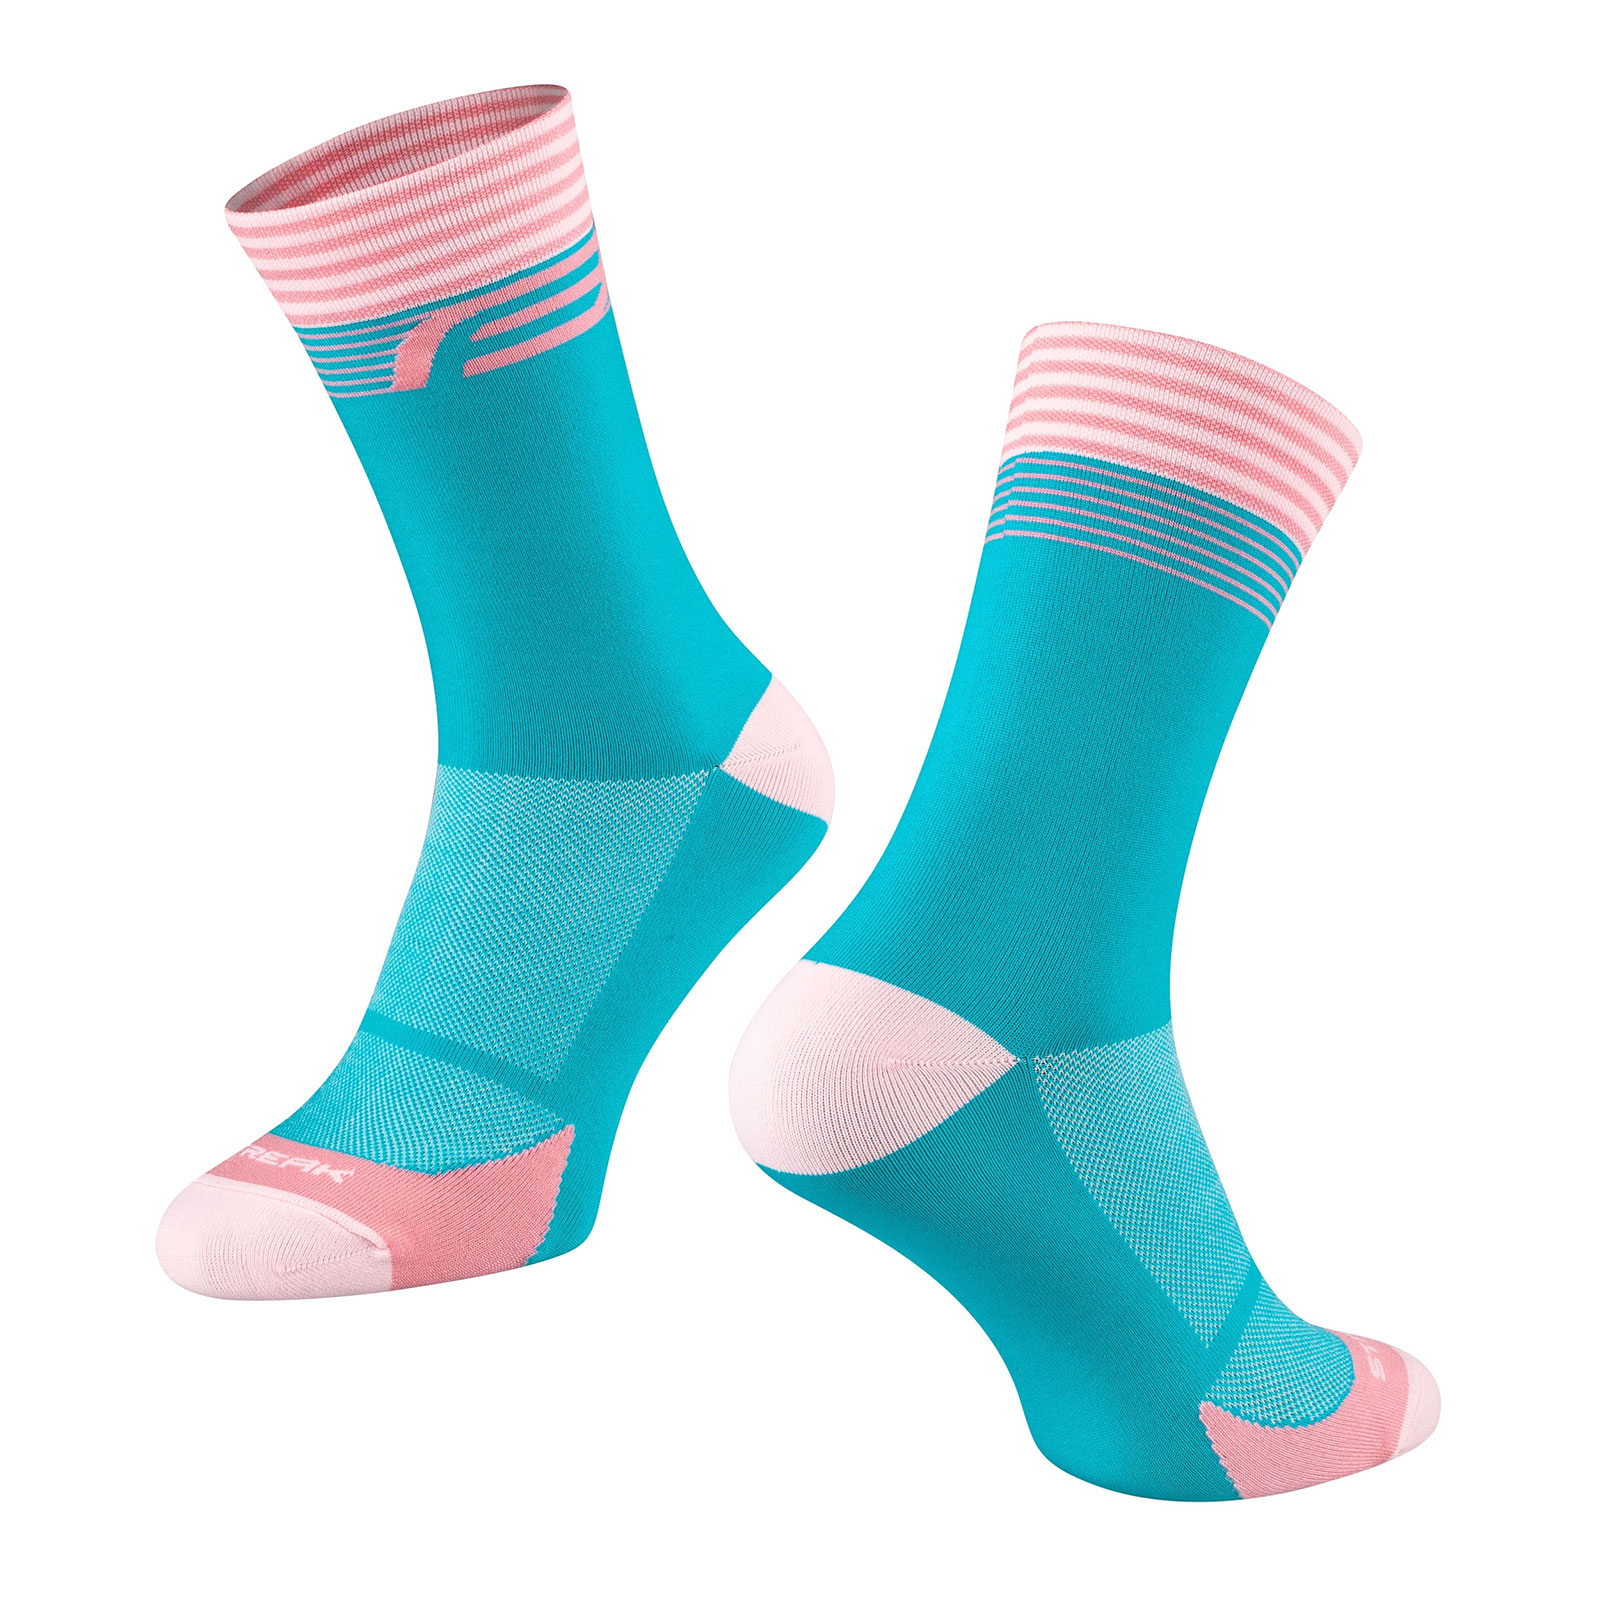 FORCE STREAK, blue/pink, socks